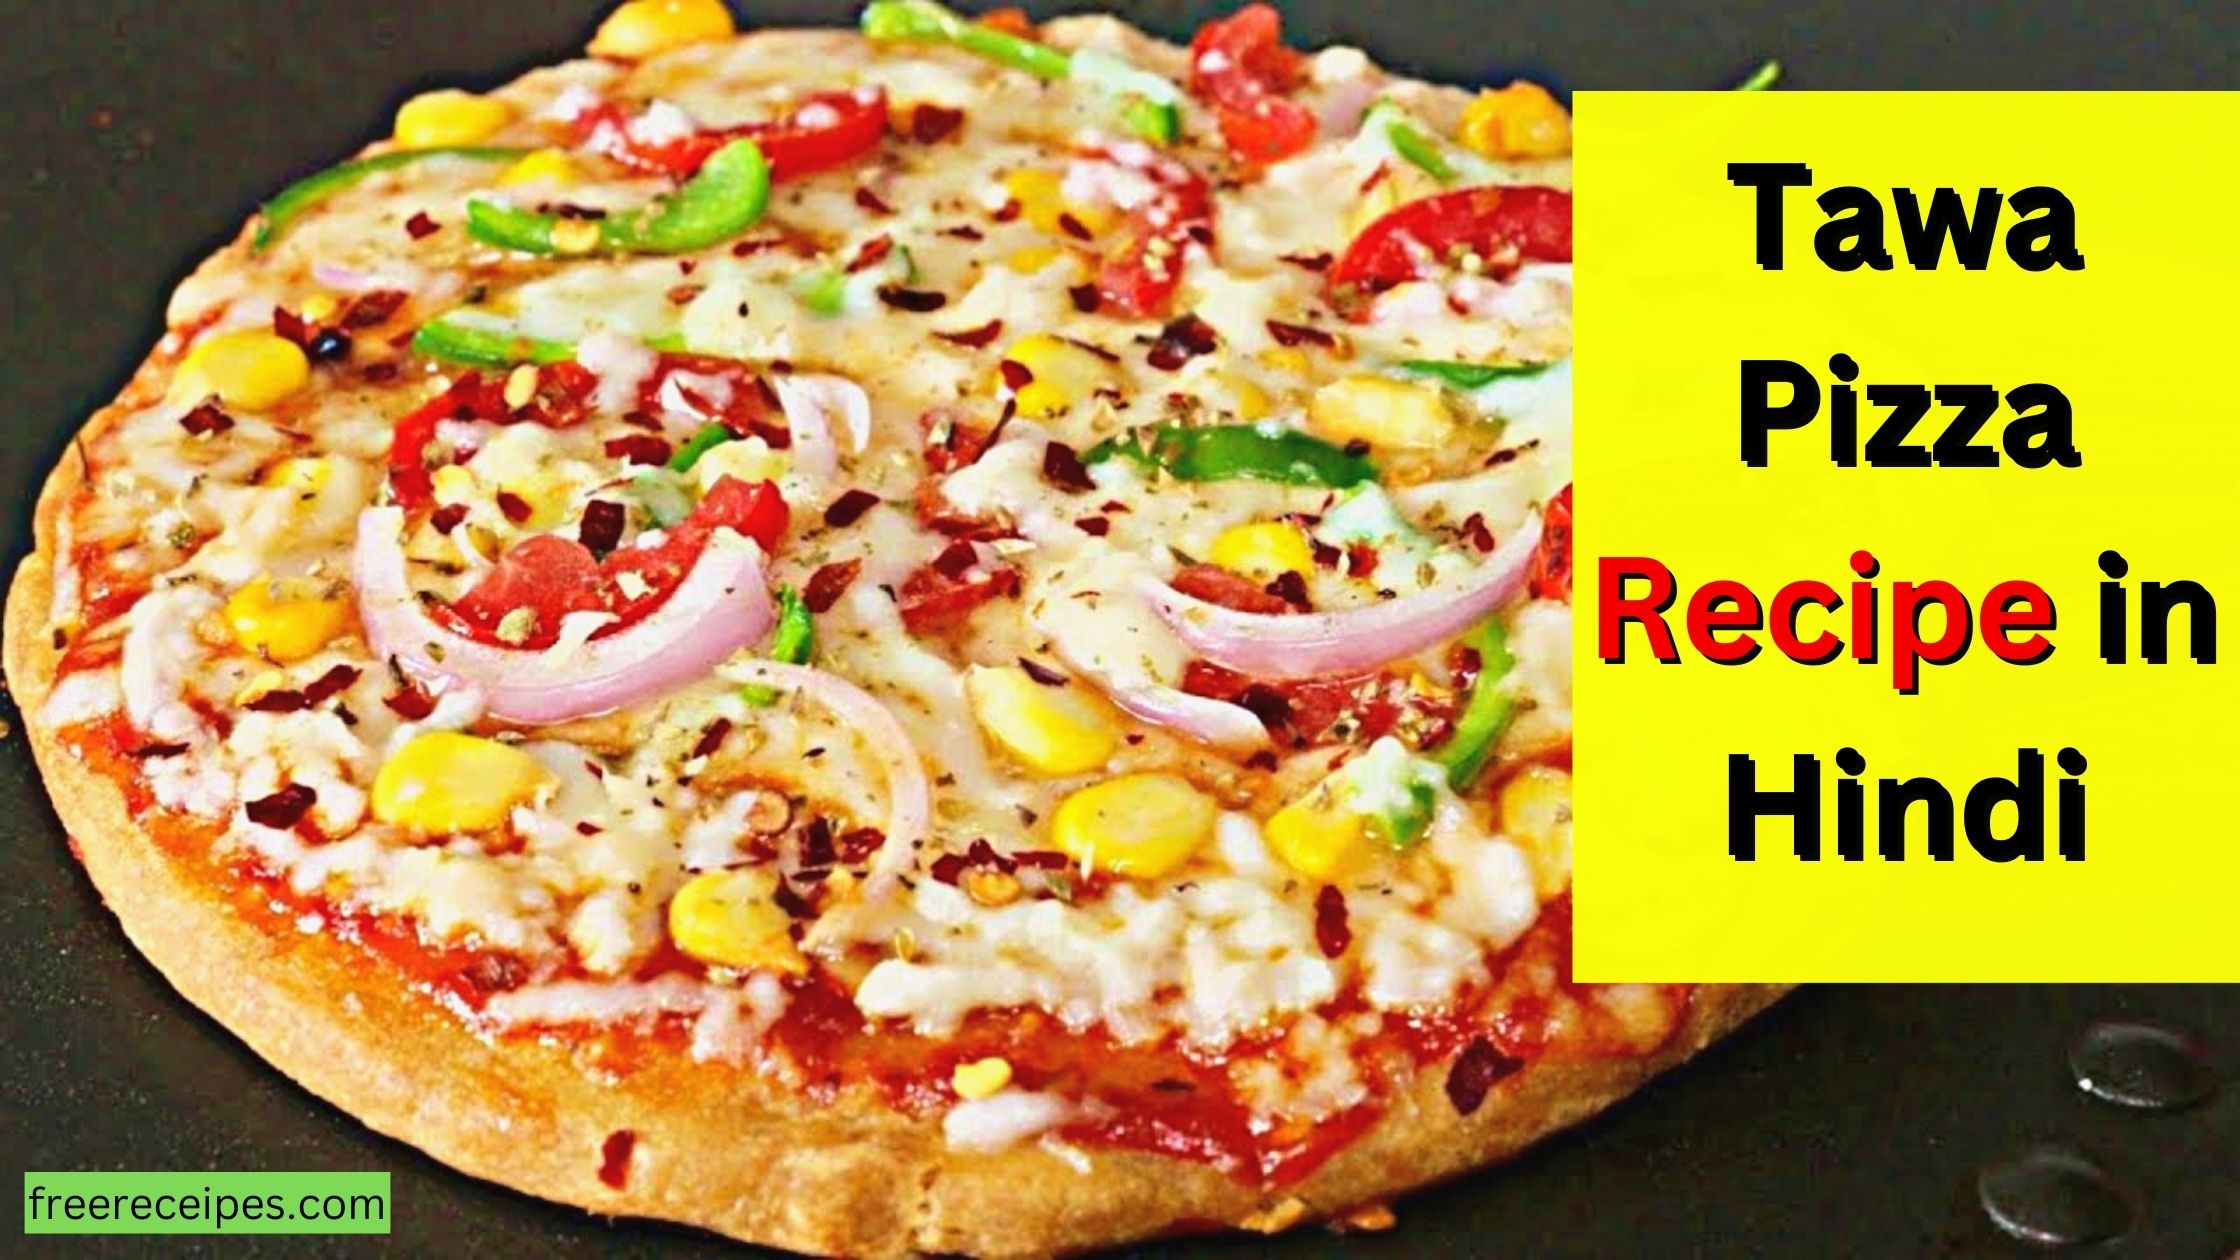 Tawa pizza recipe in hindi